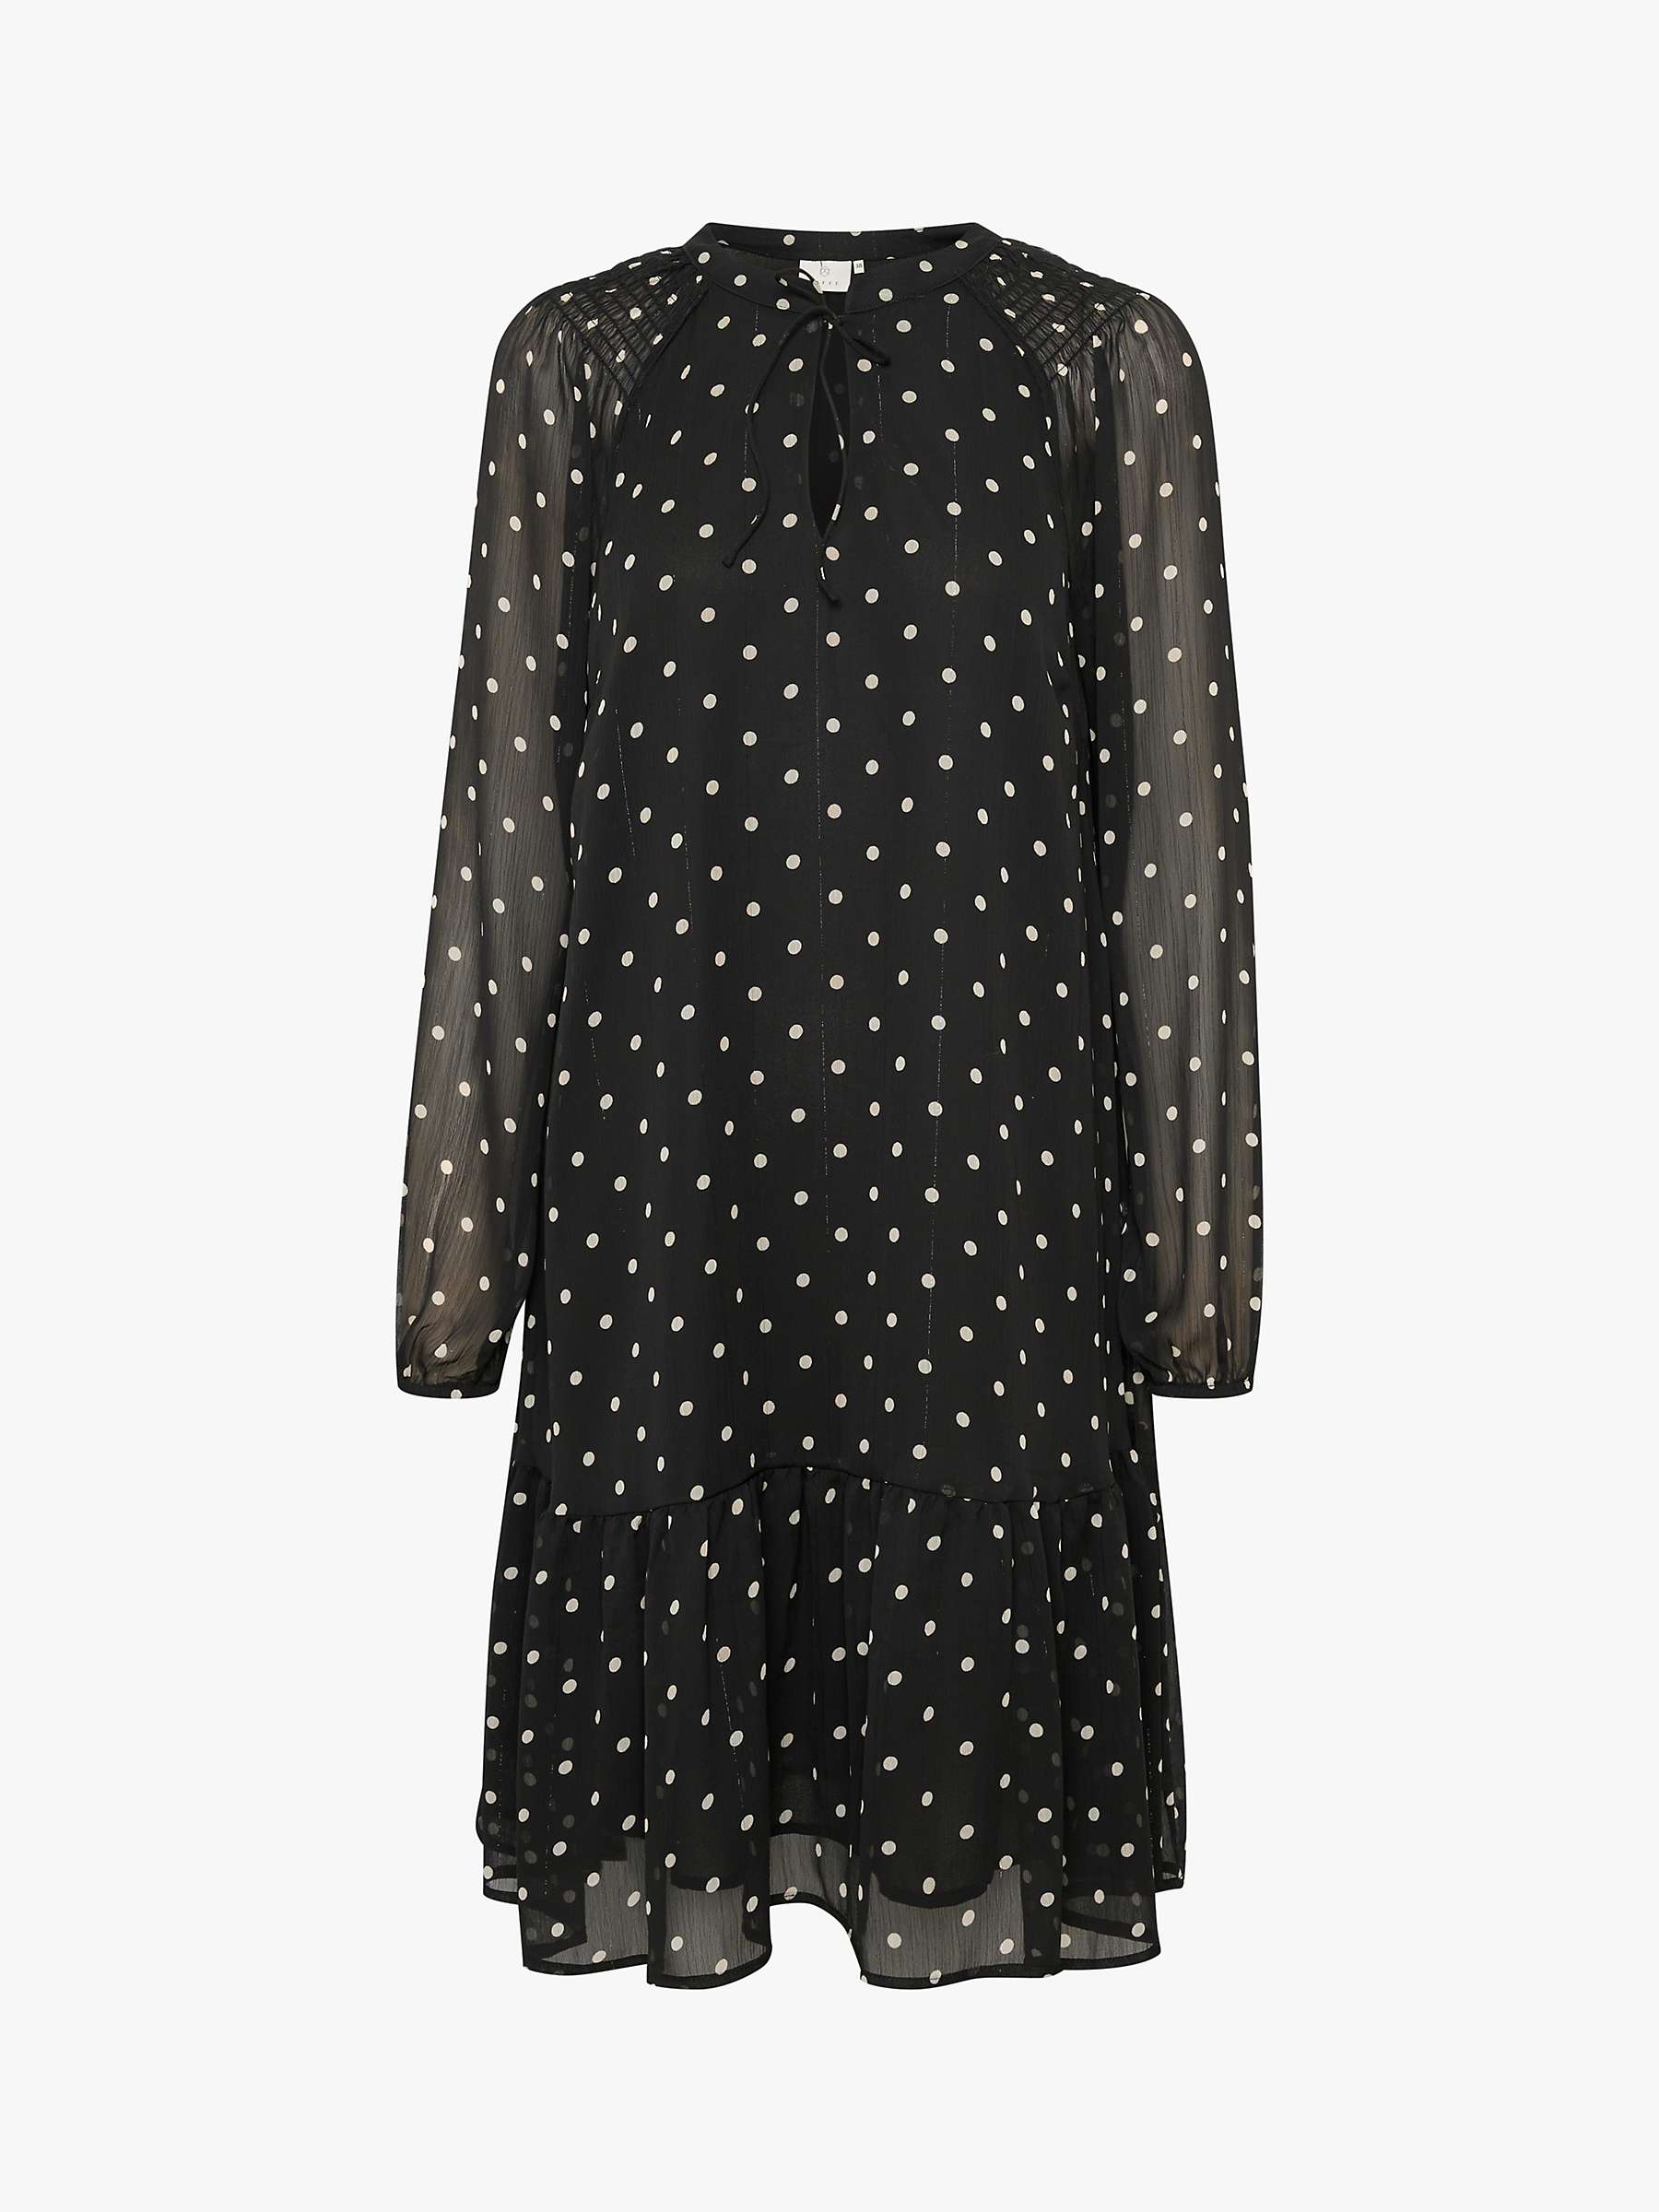 Buy KAFFE Simi A-Line Polka Dot Dress, Black/Sand Online at johnlewis.com